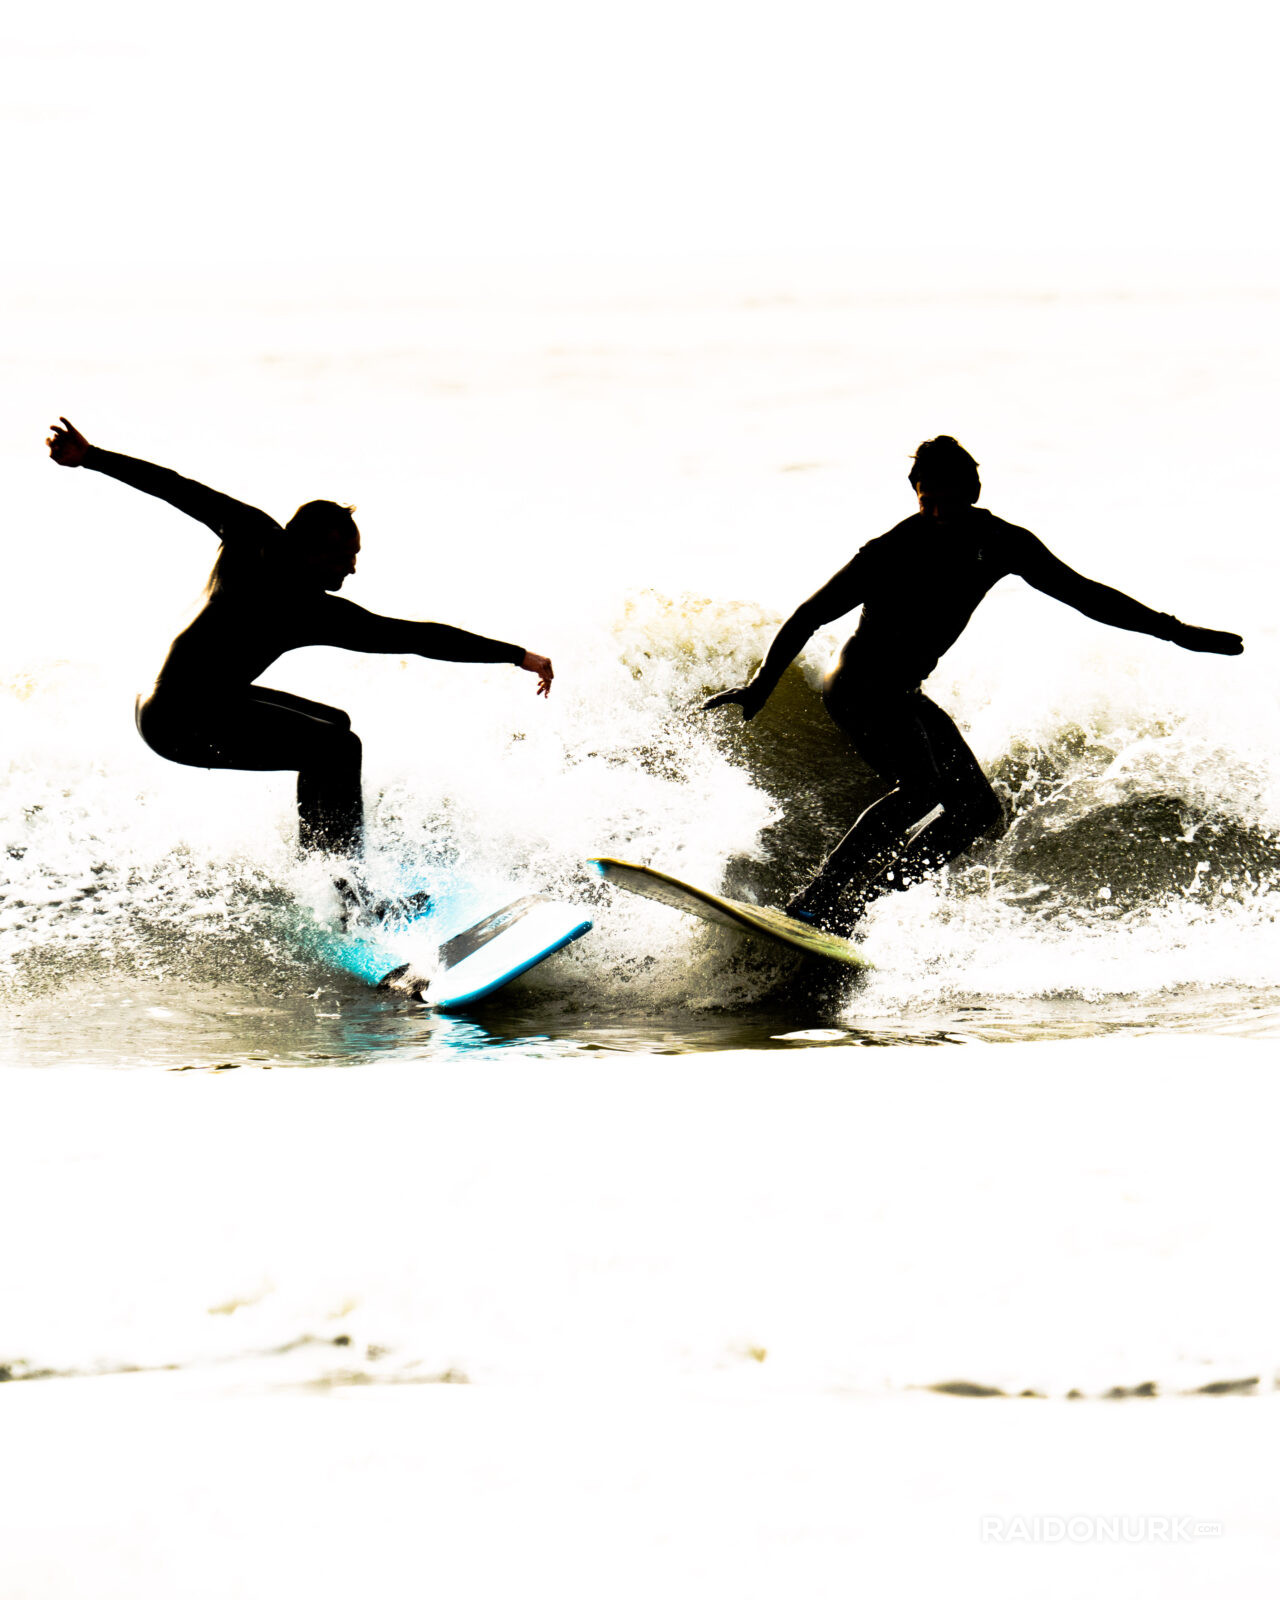 Surf, surfen, surfing, scheveningen surf, scheveninge, netherlands, Den Haag, beach, wavesurf, swell, seascape